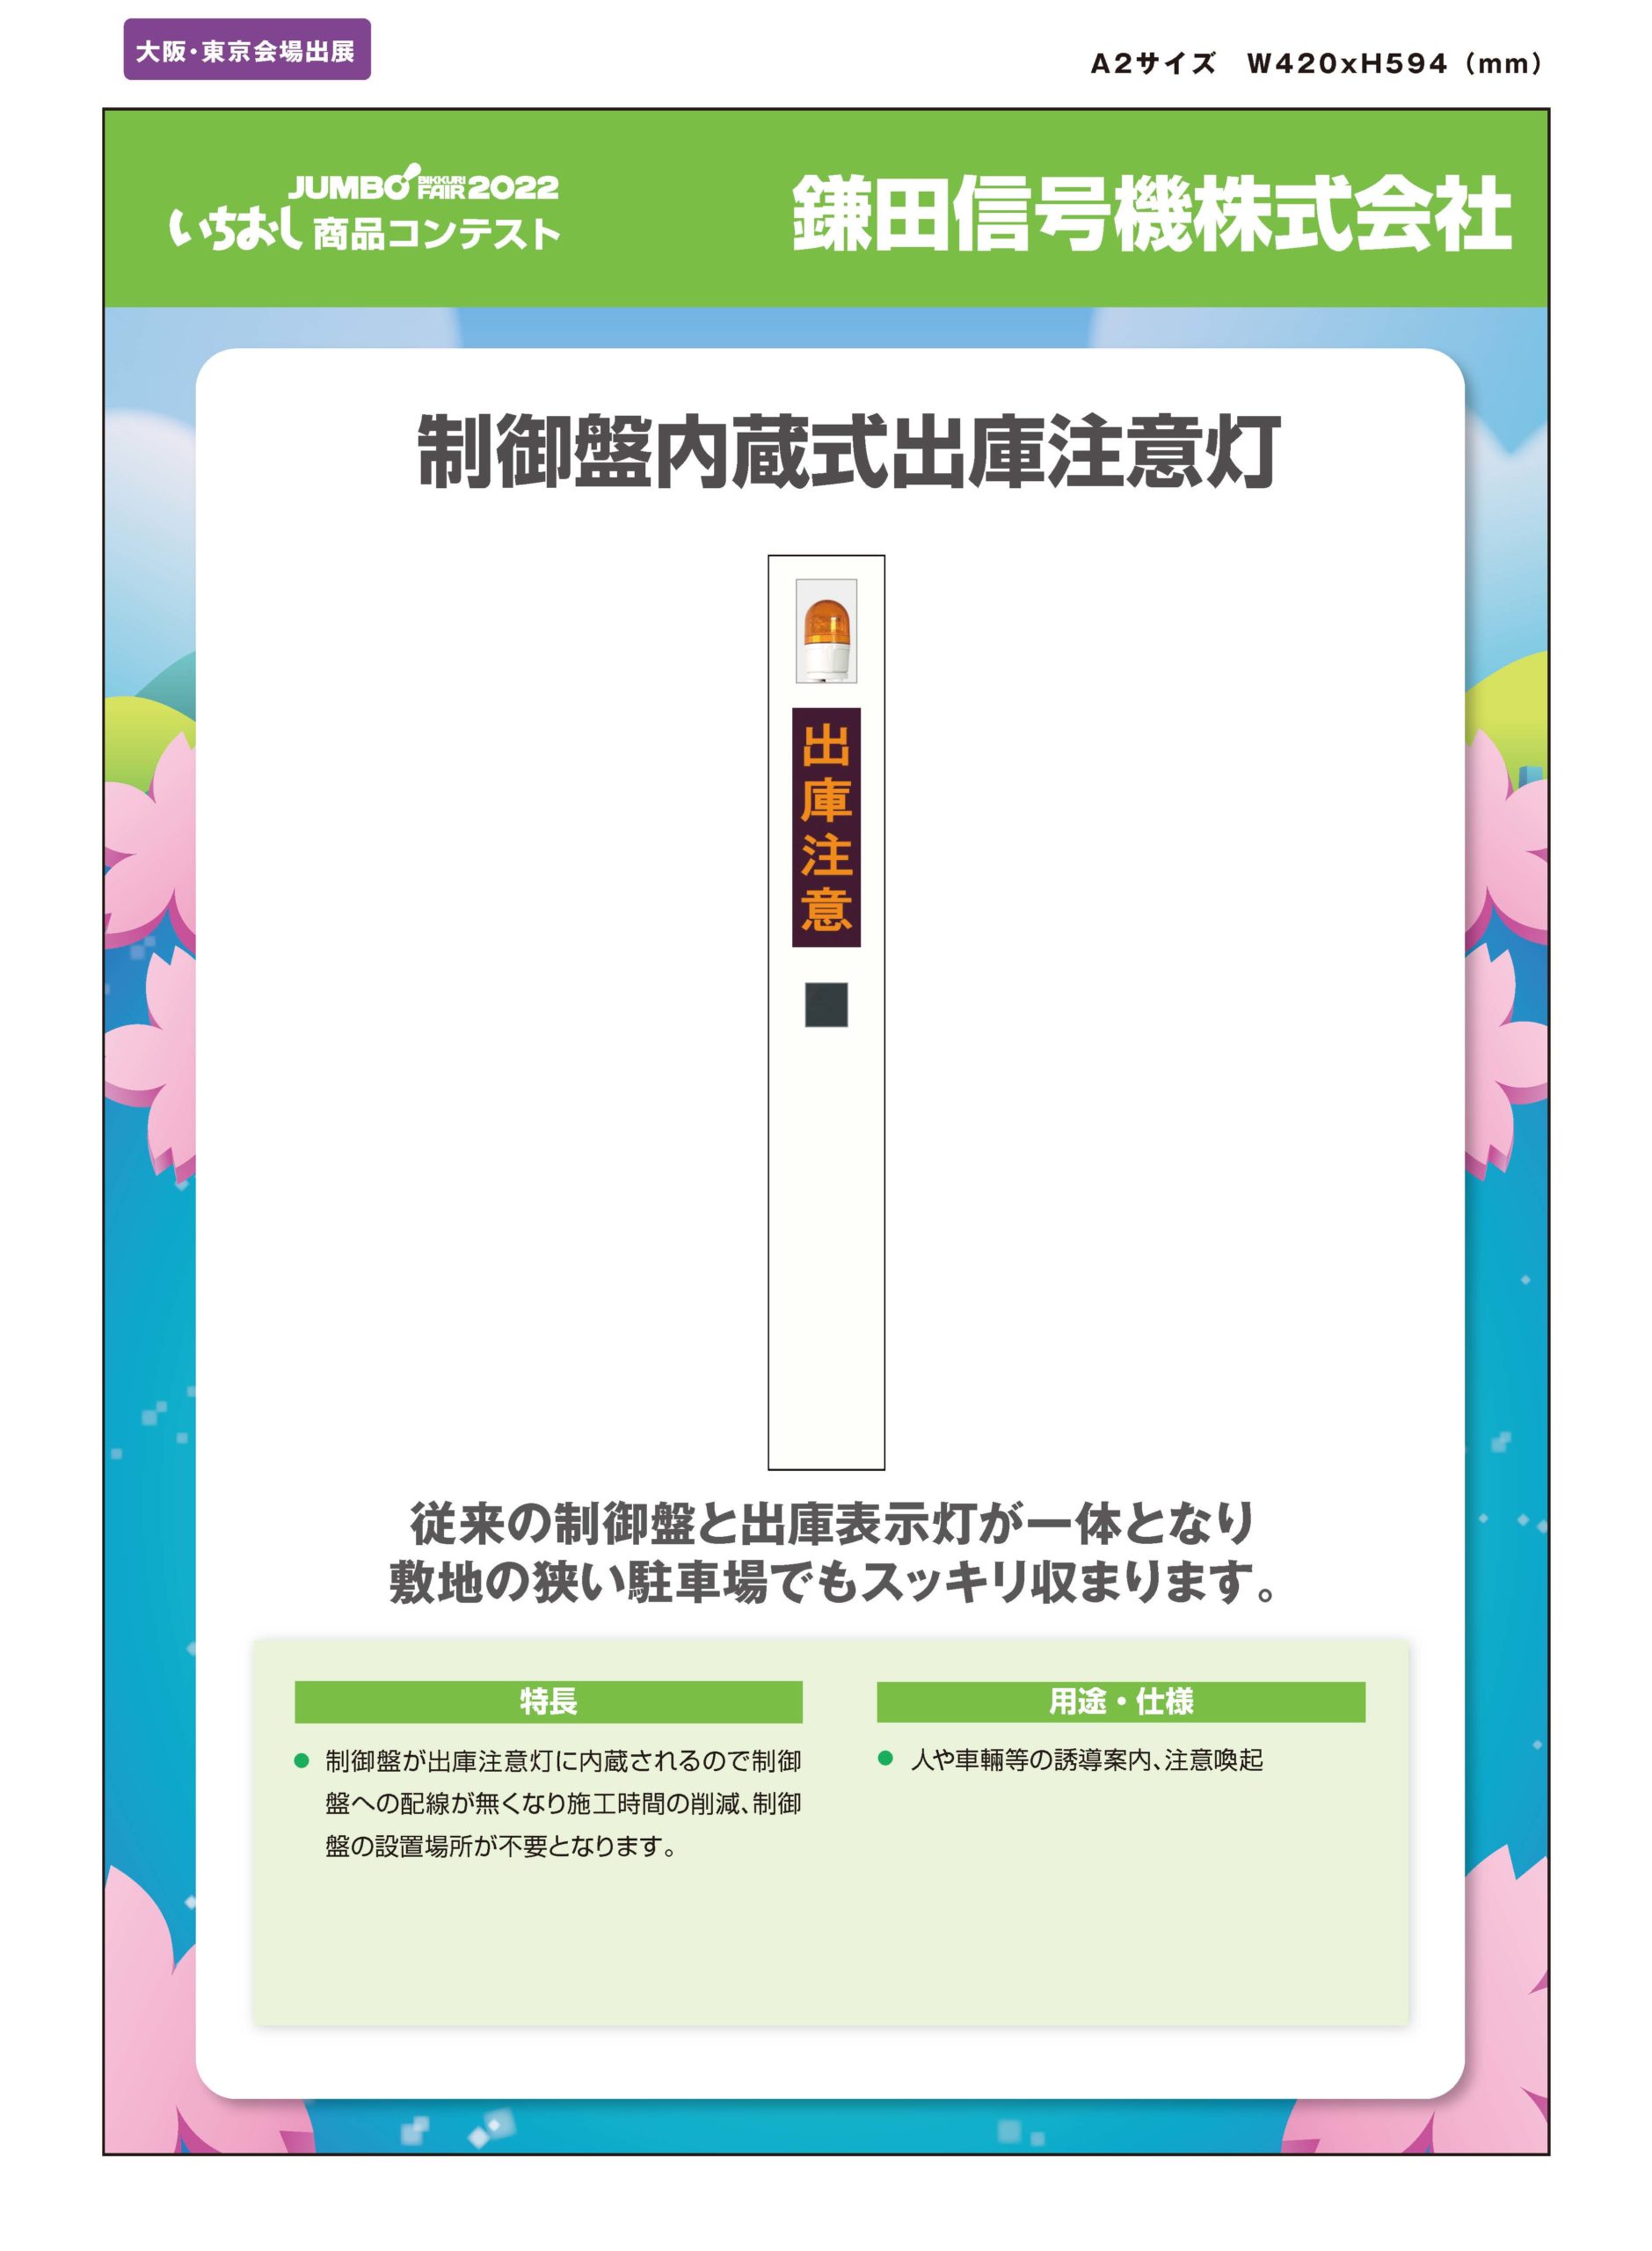 「制御盤内蔵式出庫注意灯」鎌田信号機株式会社の画像